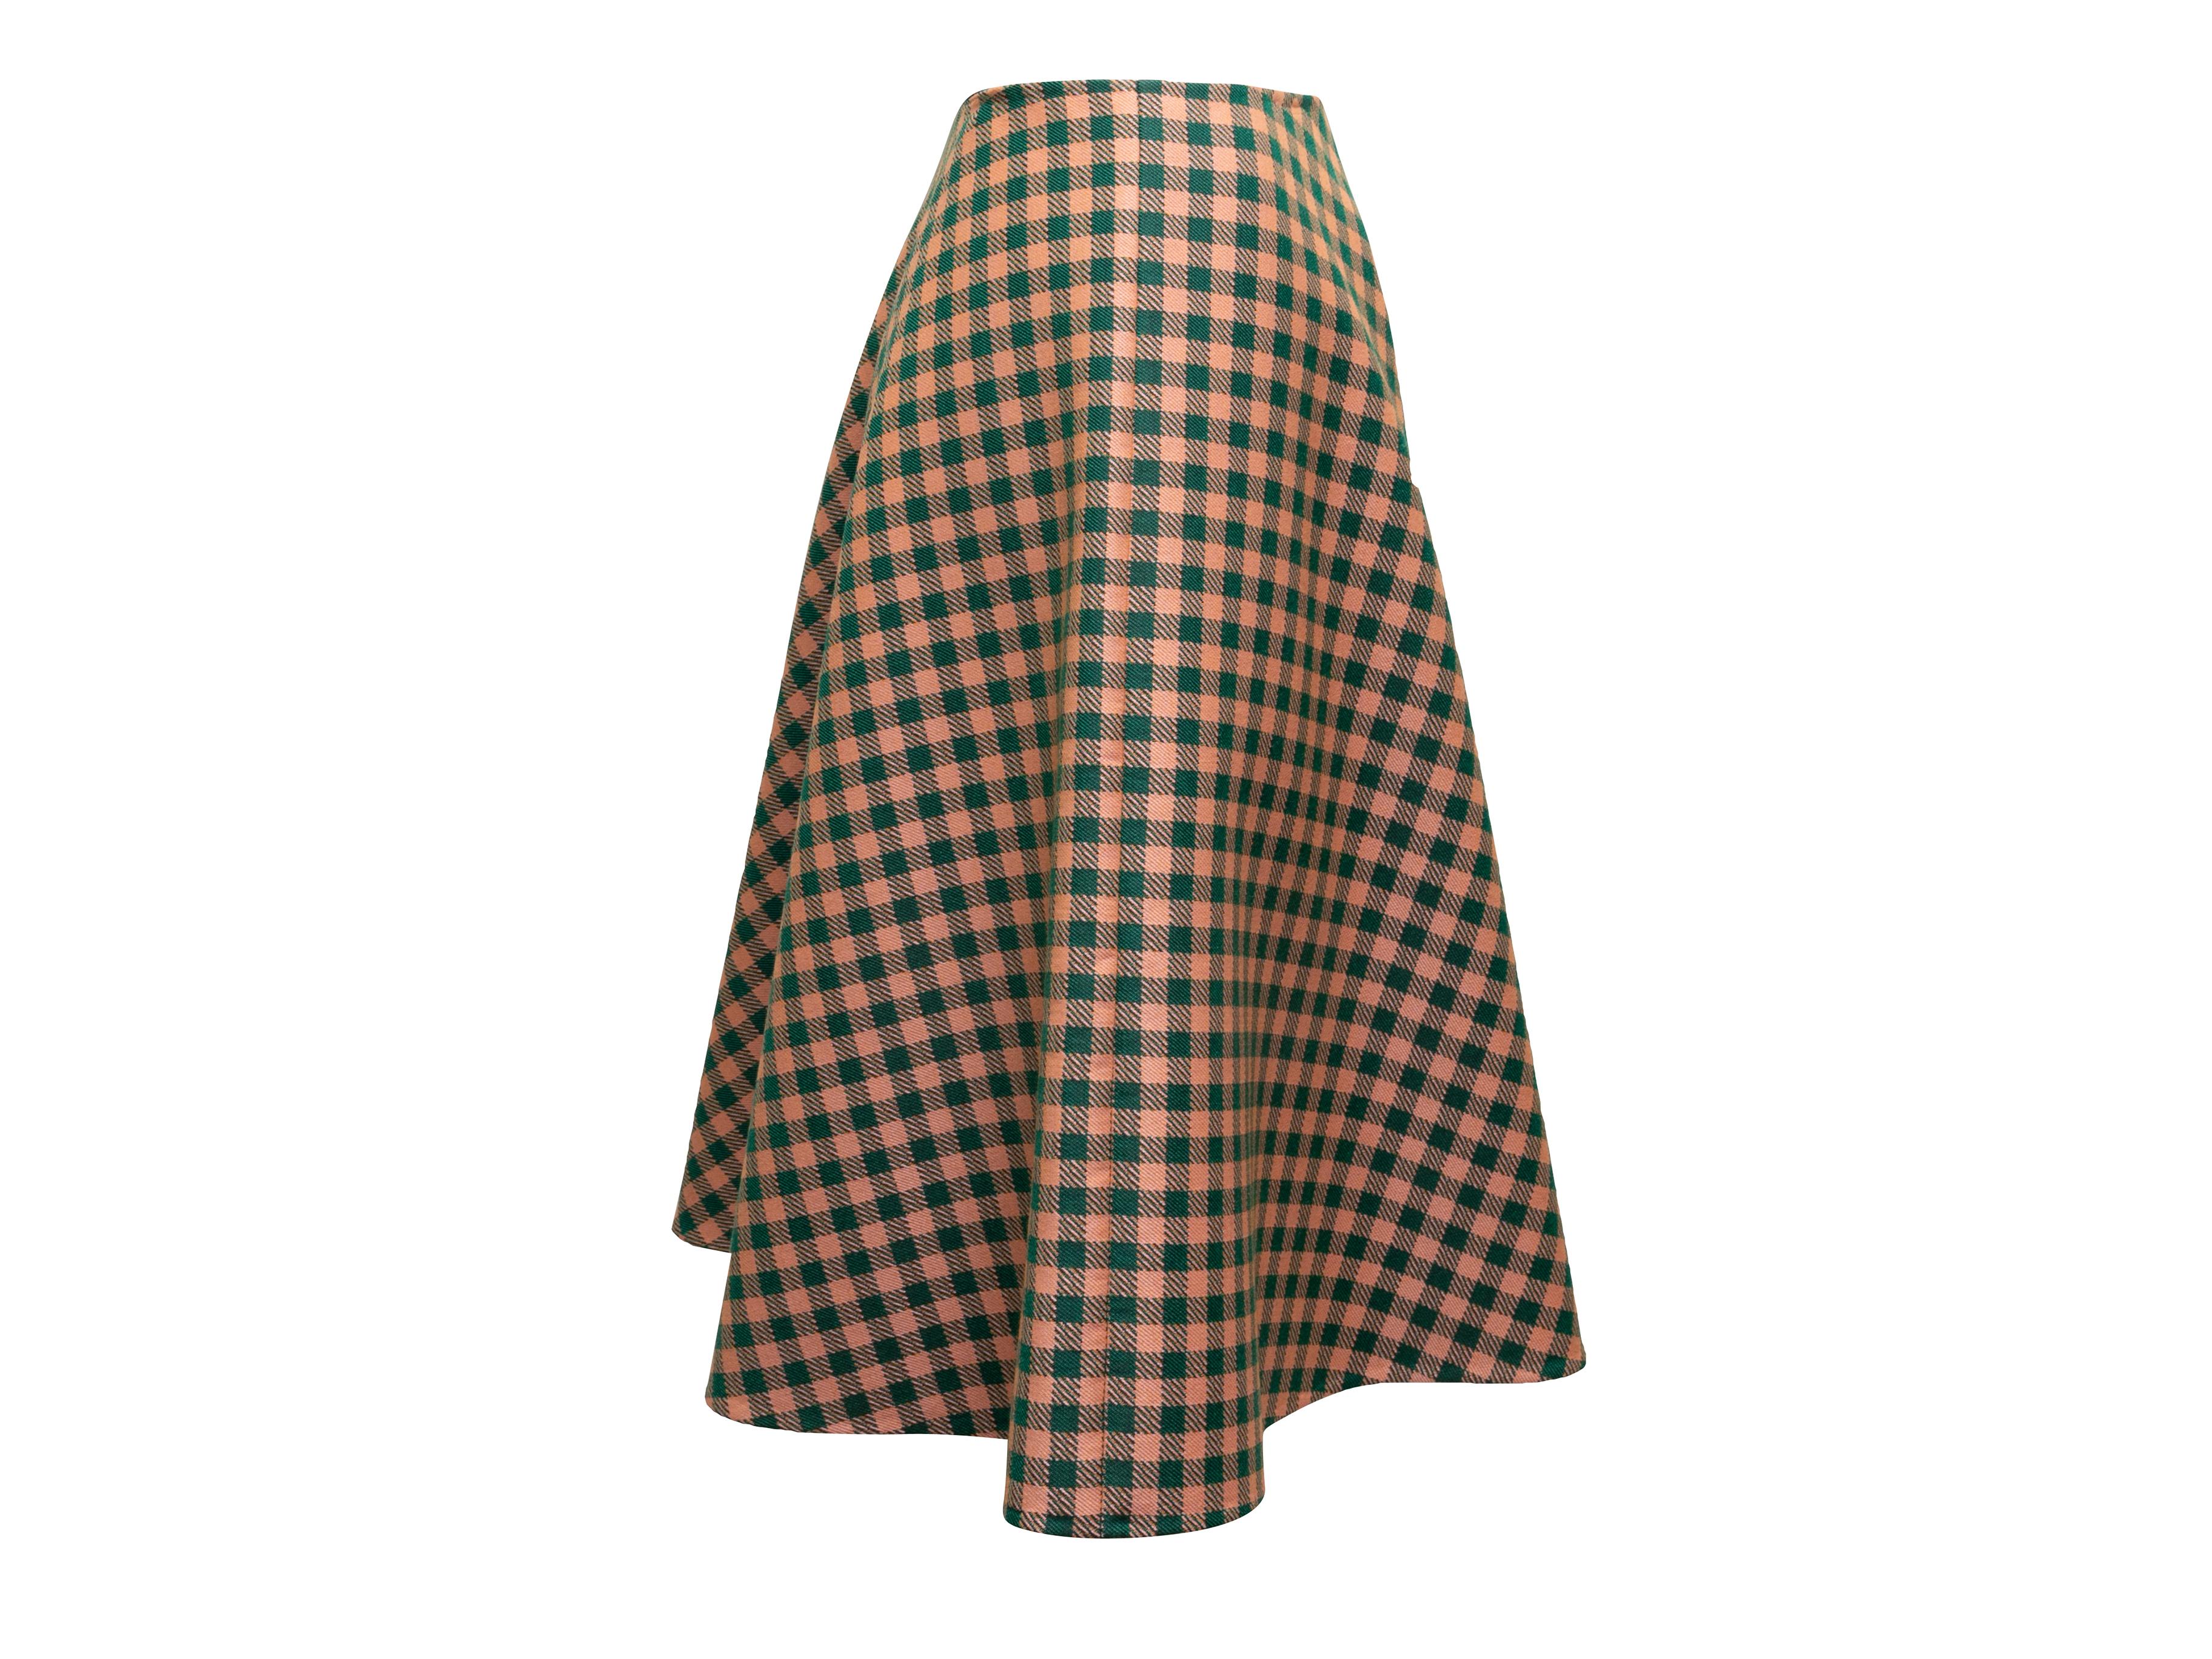 Dark green and orange virgin wool gingham A-line skirt by Prada. Side zip closure. 32